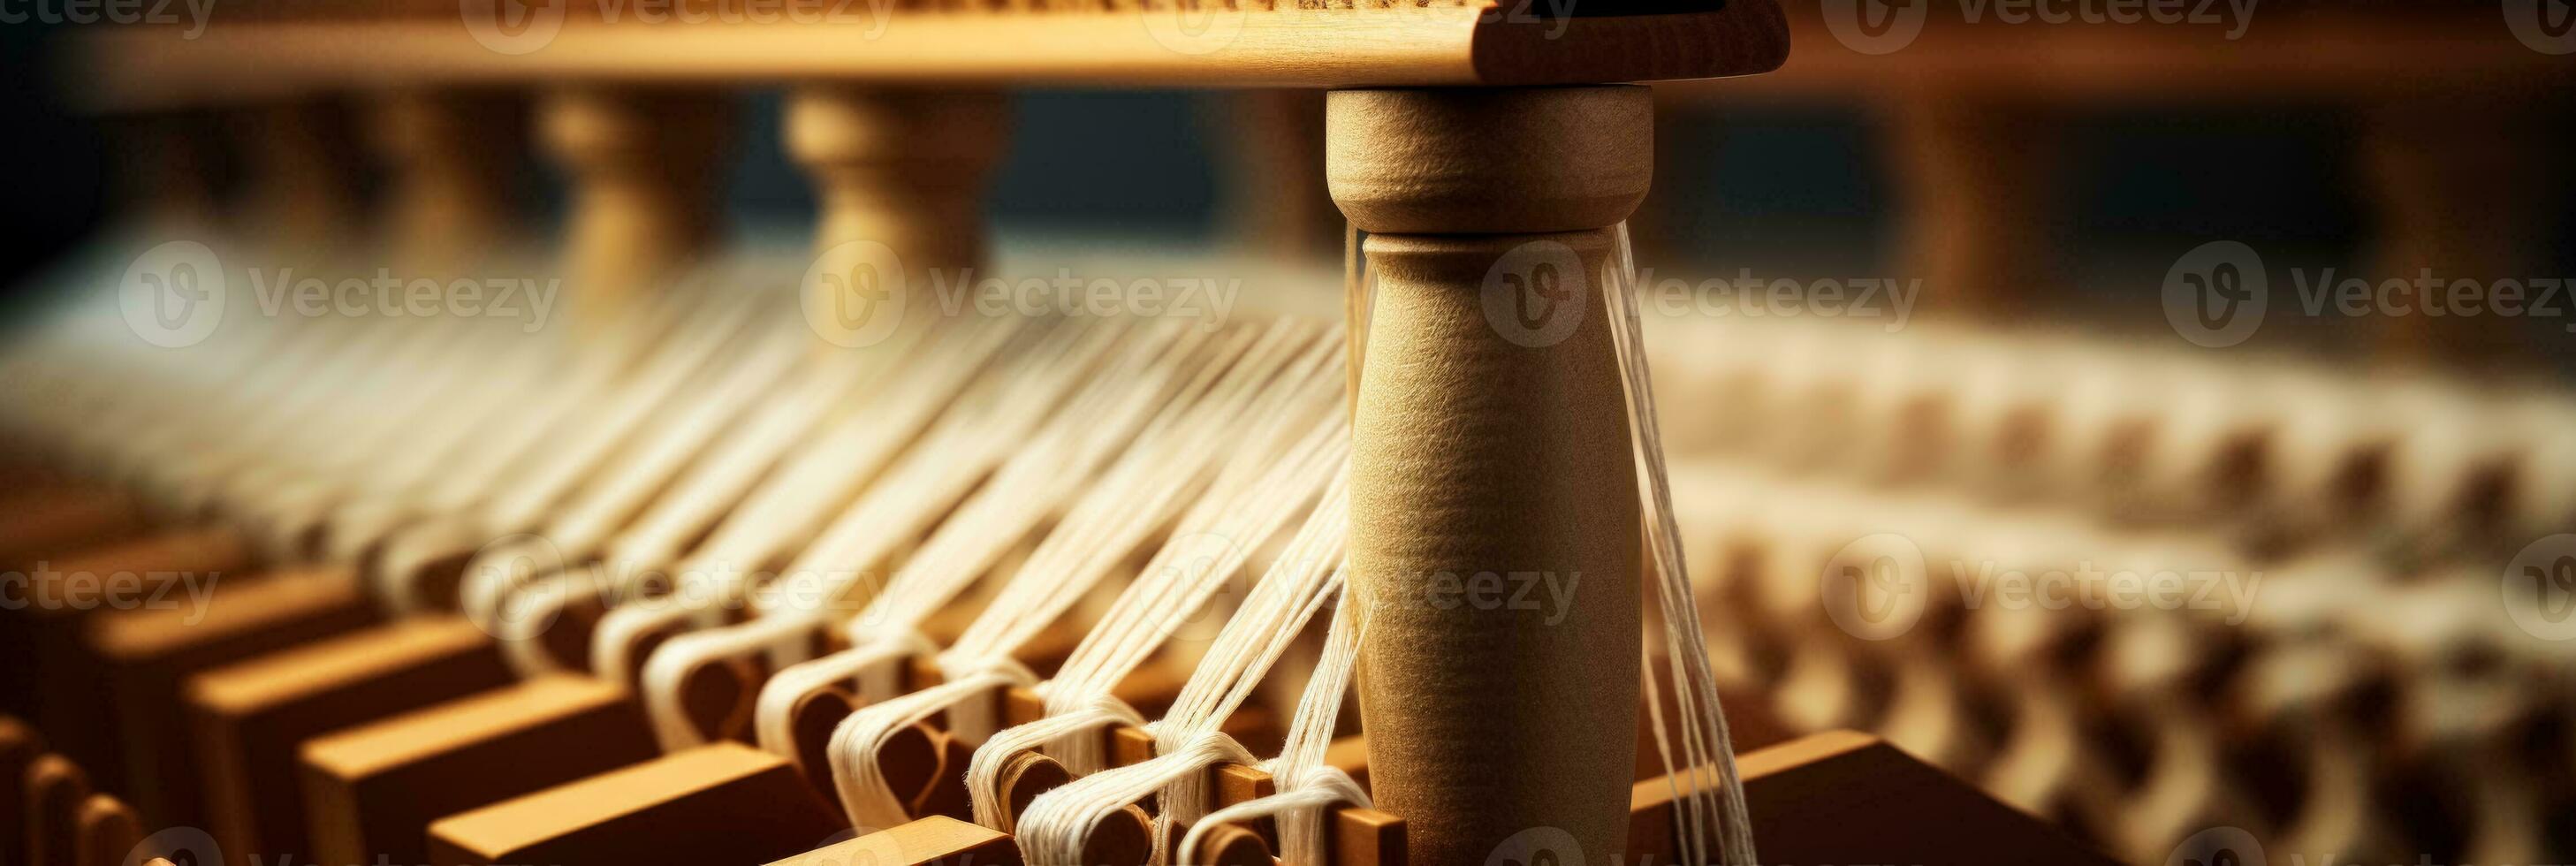 macro représentation de coton fils finement entrelacé dans traditionnel tissage métier à tisser photo